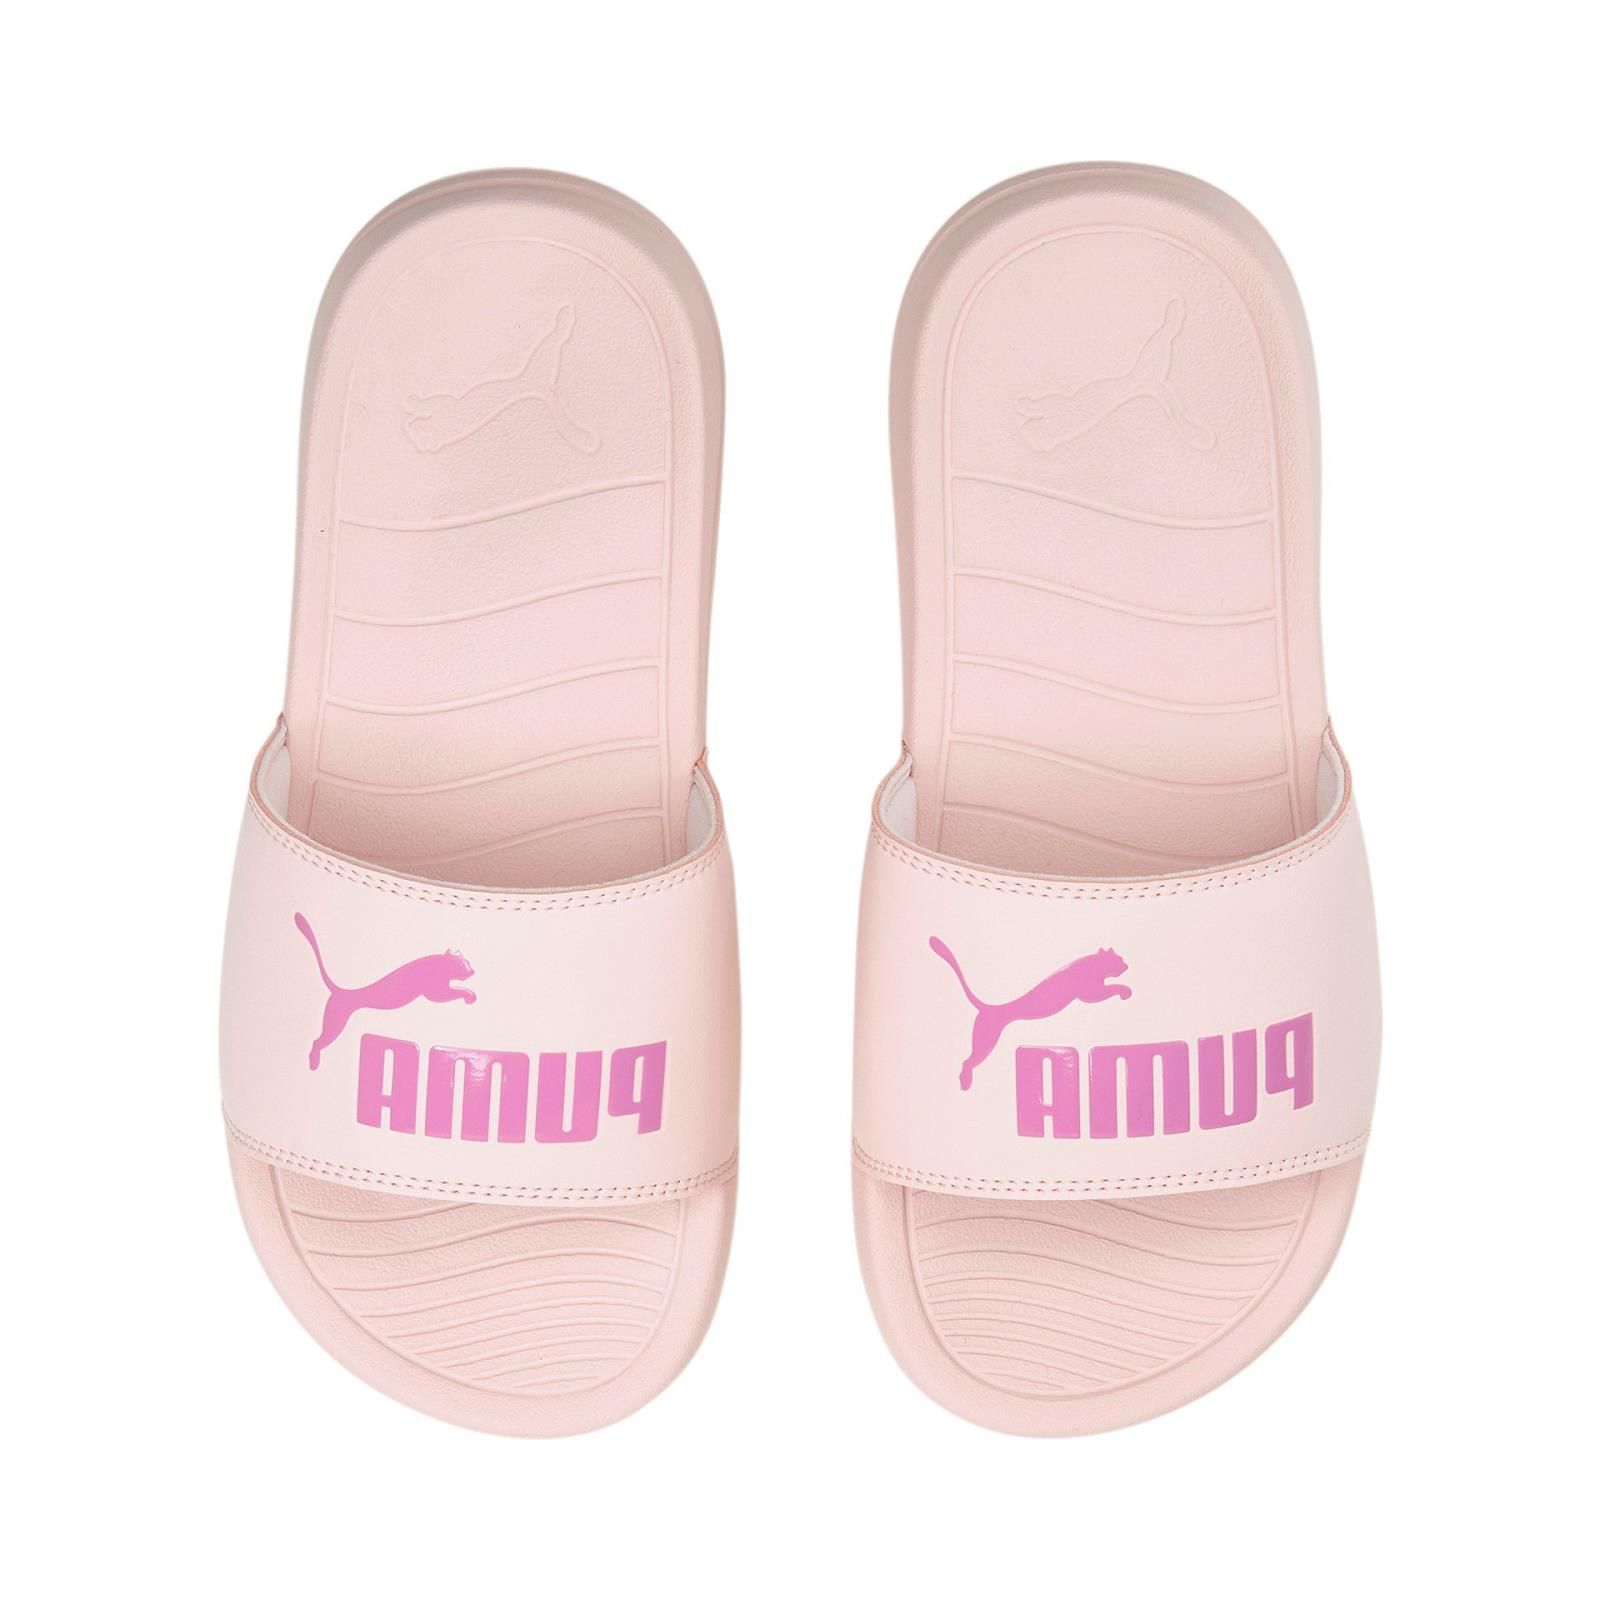 mei Beven traagheid Puma slippers roze Meisjes ( - popcat slipper roze372313-21) - Junior Steps